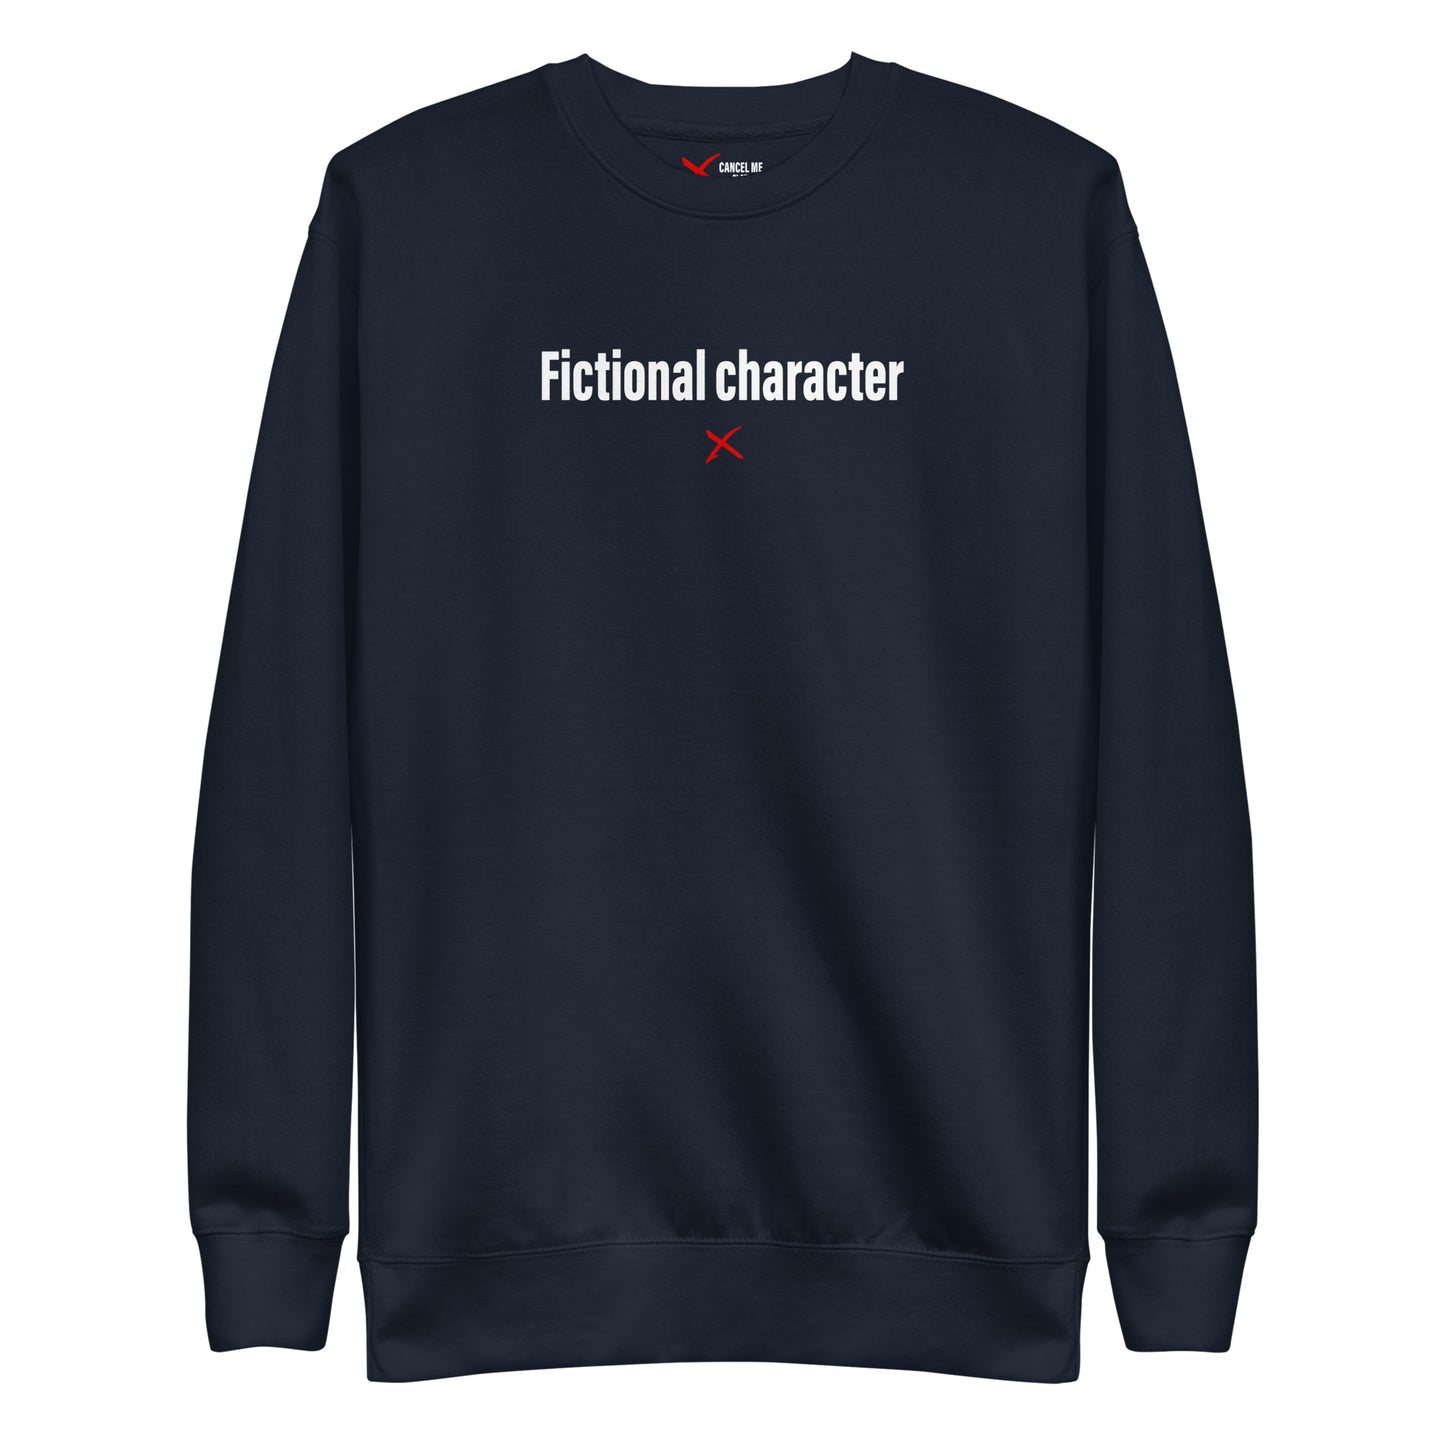 Fictional character - Sweatshirt